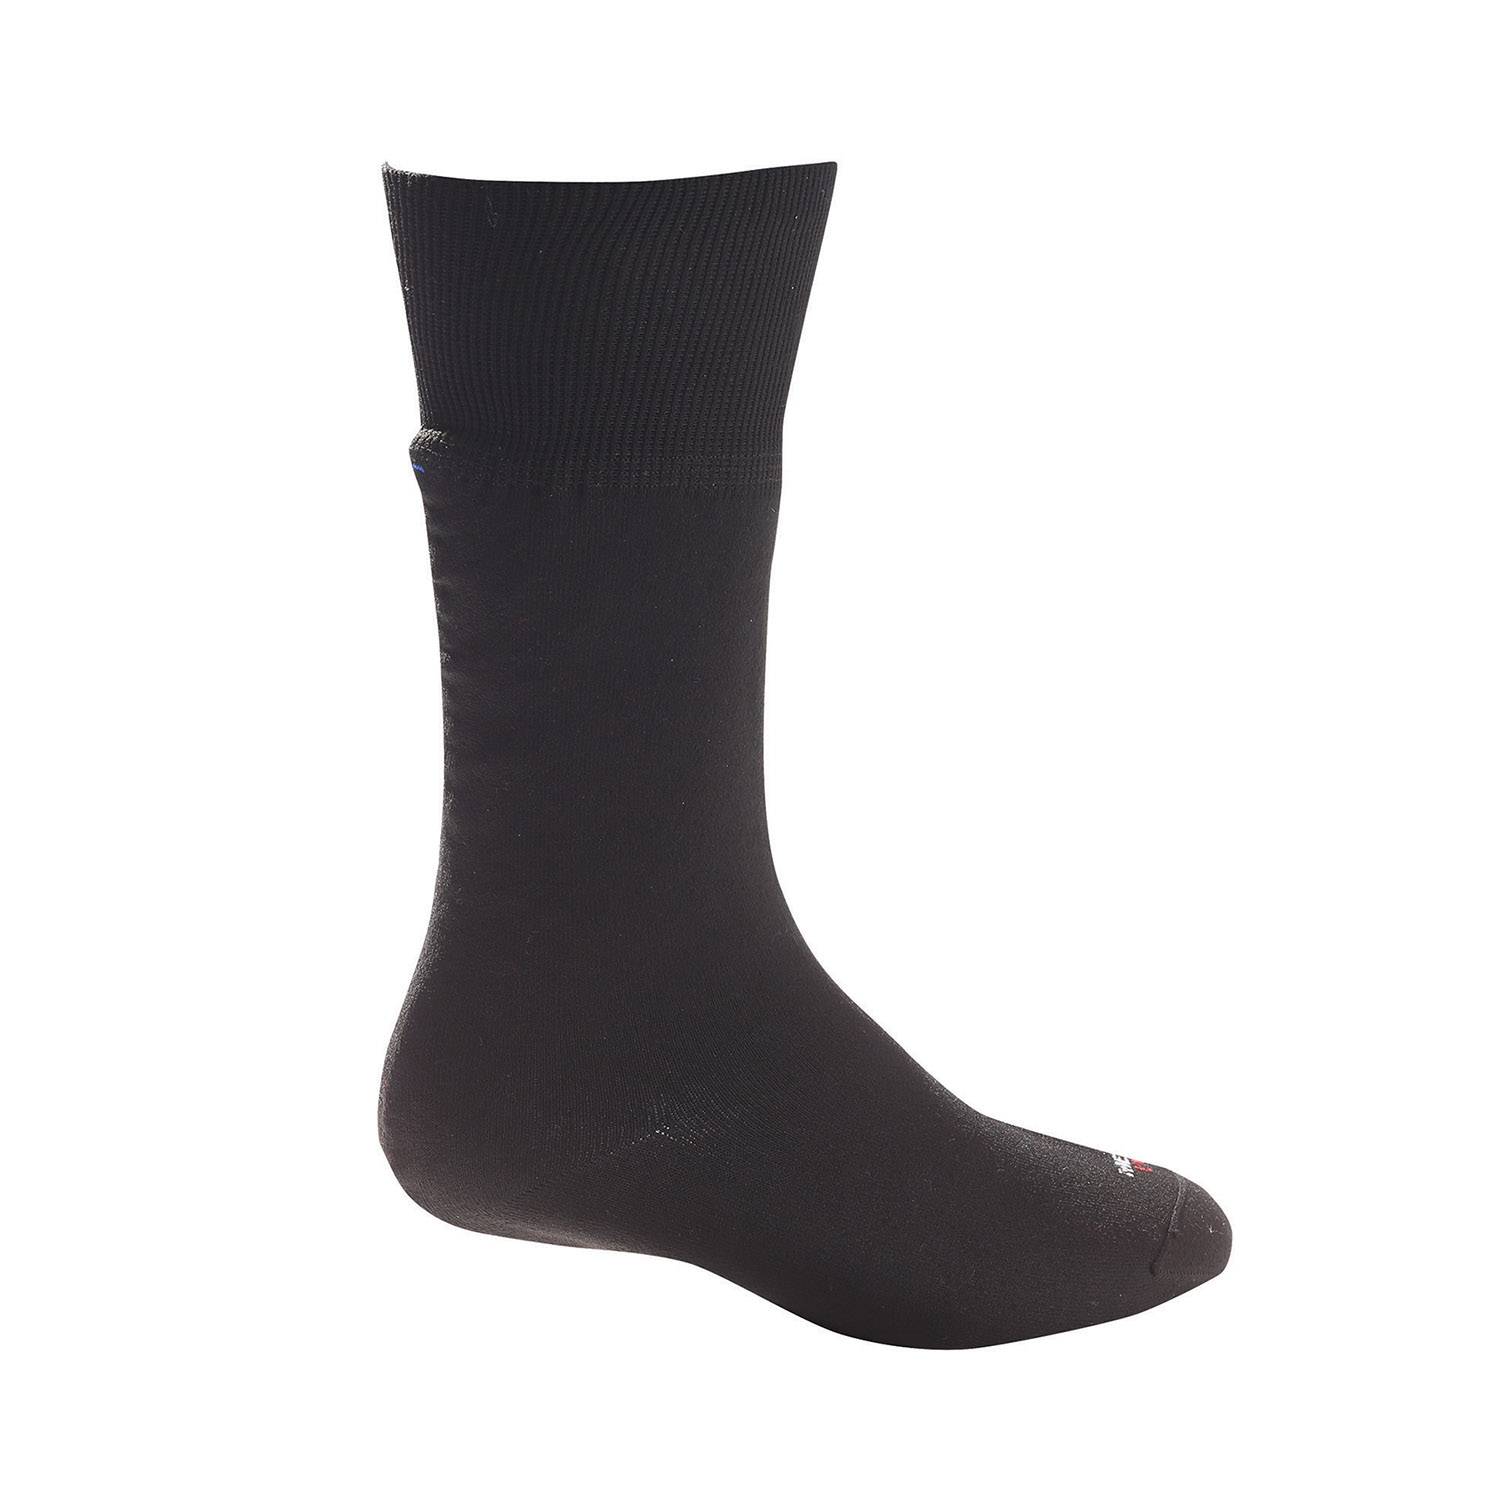 Hanz Waterproof Chillblocker Socks